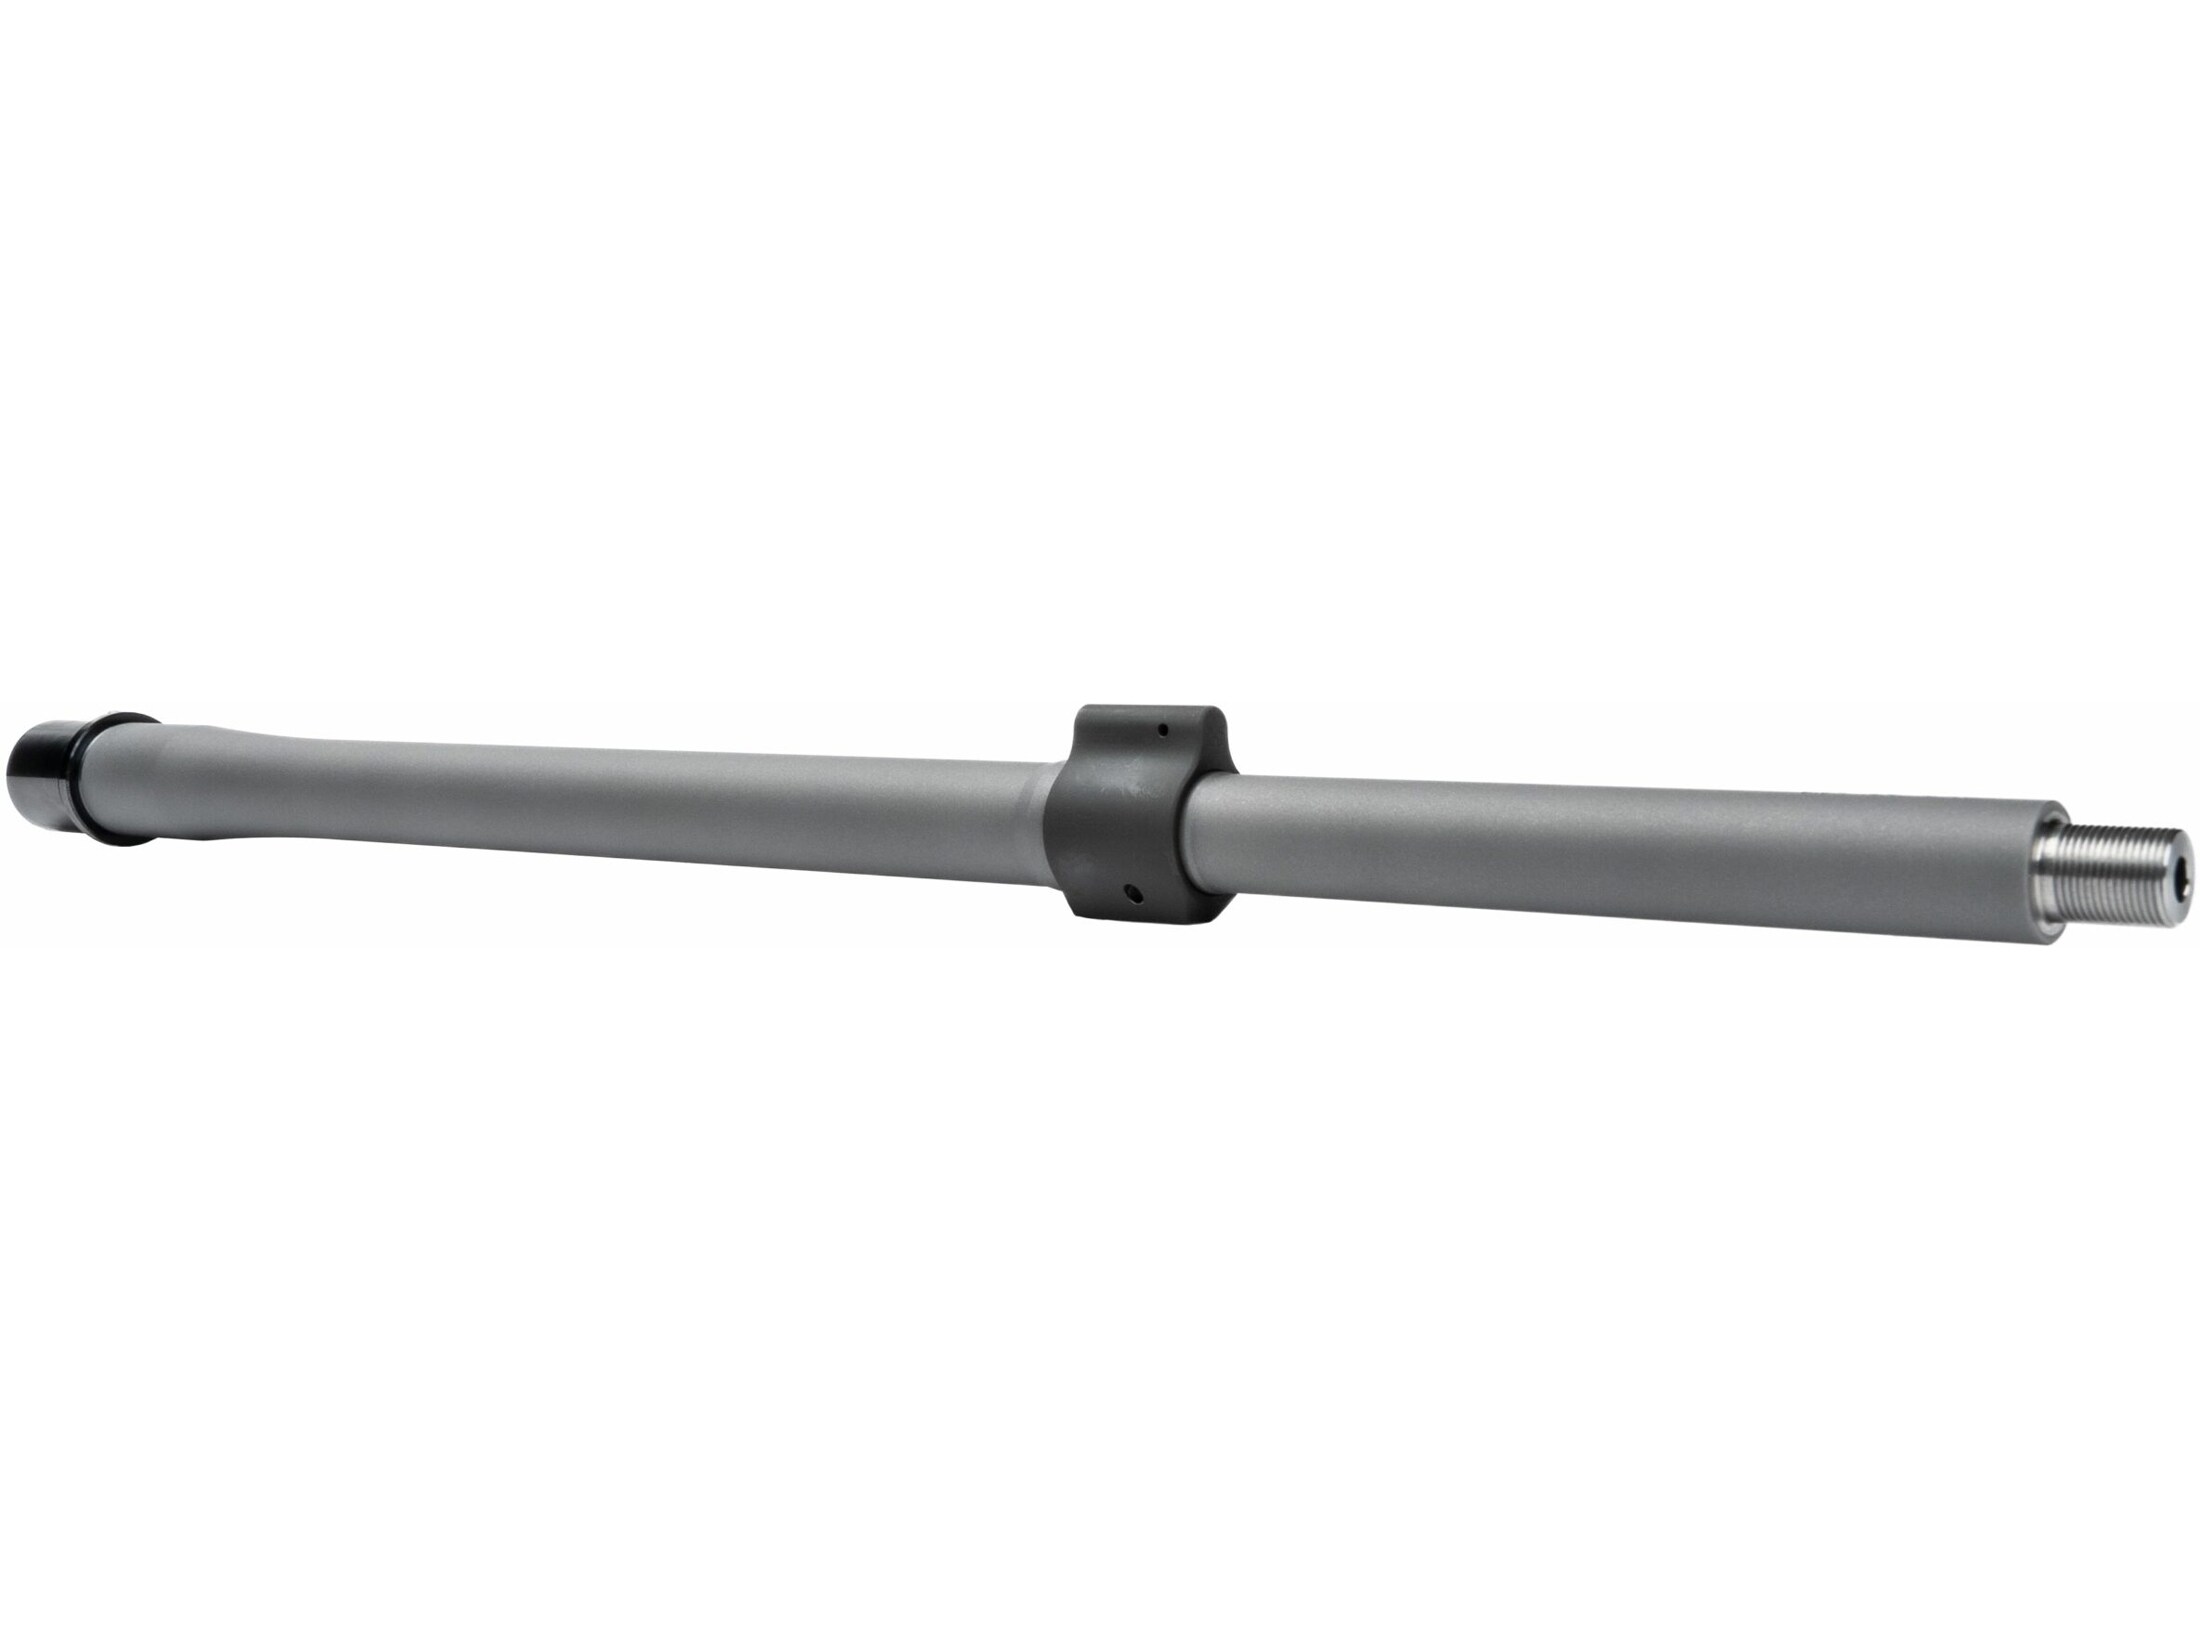 Noveske SPR Barrel Headspaced Bolt AR-15 5.56x45mm 18 1 7 Twist .750